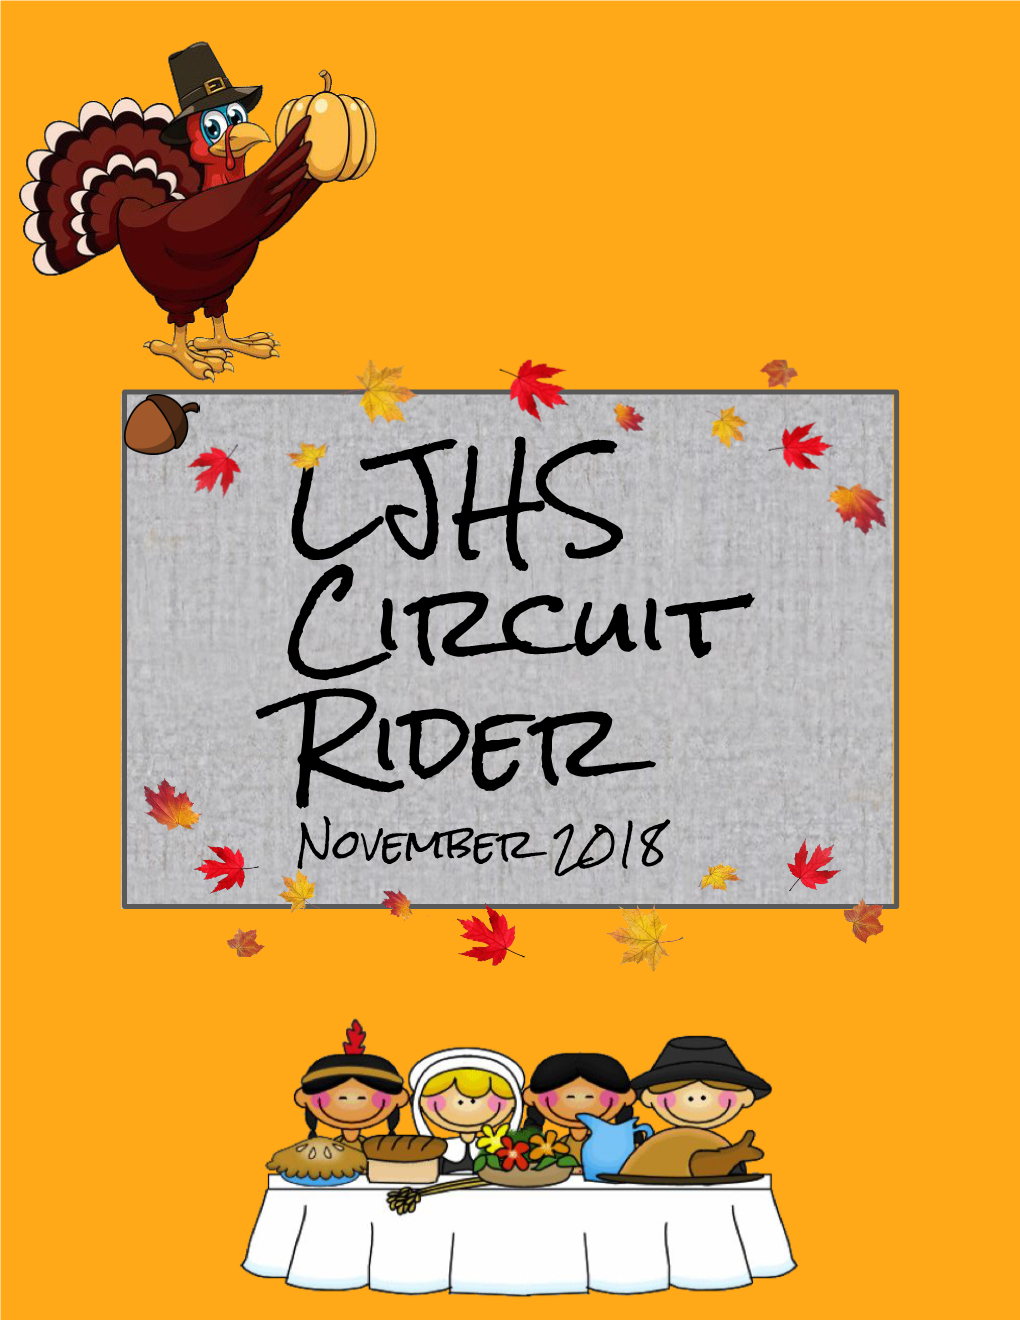 LJHS Circuit Rider November 2018 LJHS CIRCUIT RIDER November 2018 ~